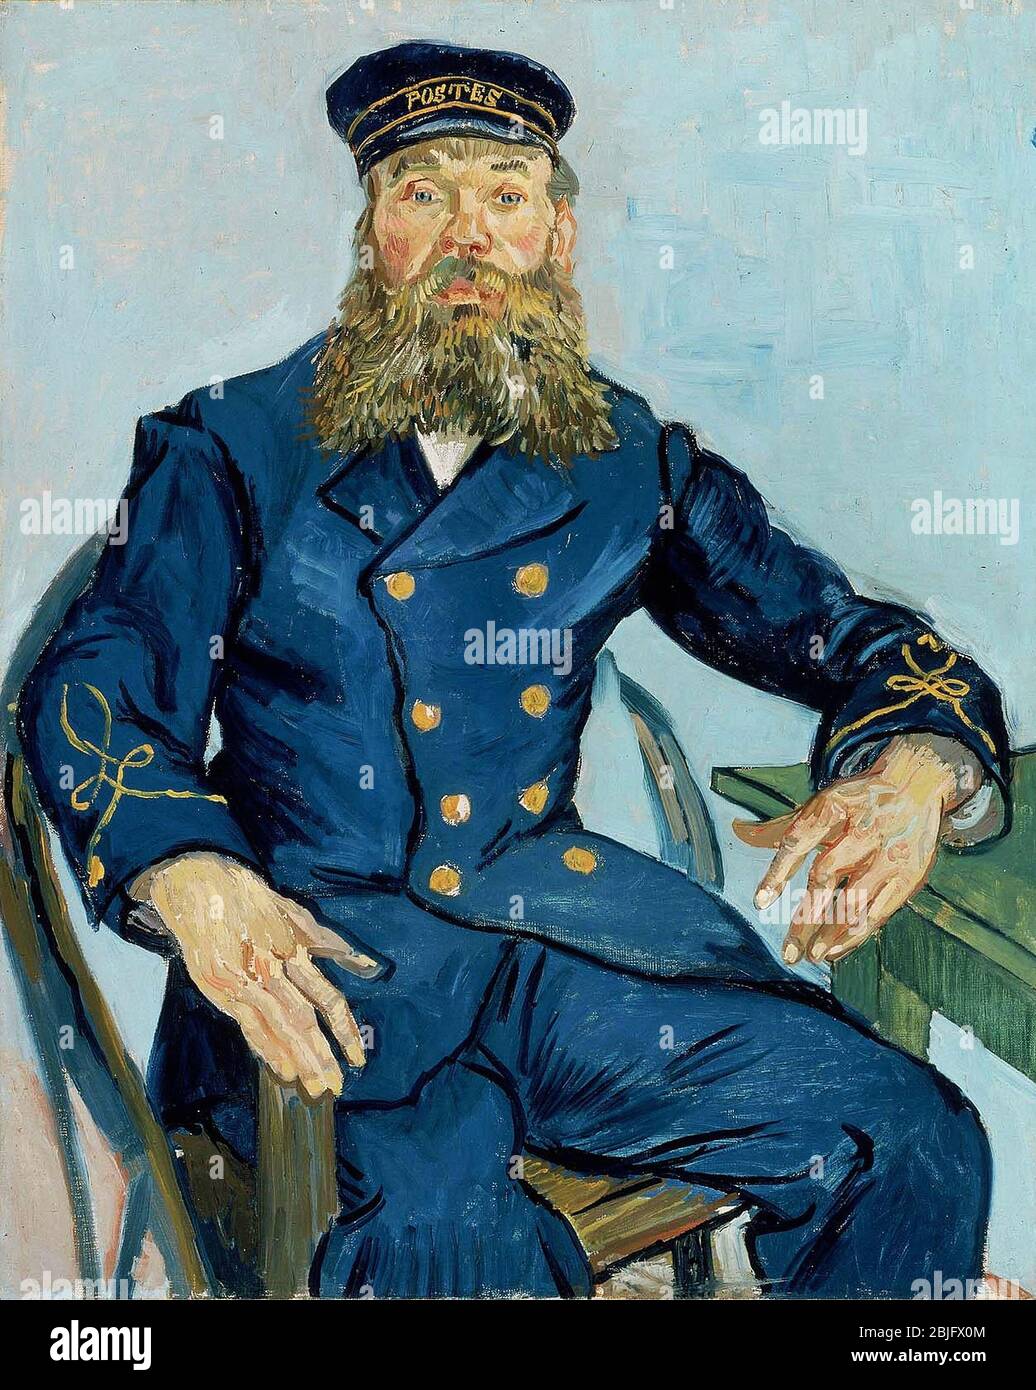 Retrato del Postman Joseph Roulin de Van Gogh, 1888. Museo de Bellas Artes en Boston, Estados Unidos Foto de stock